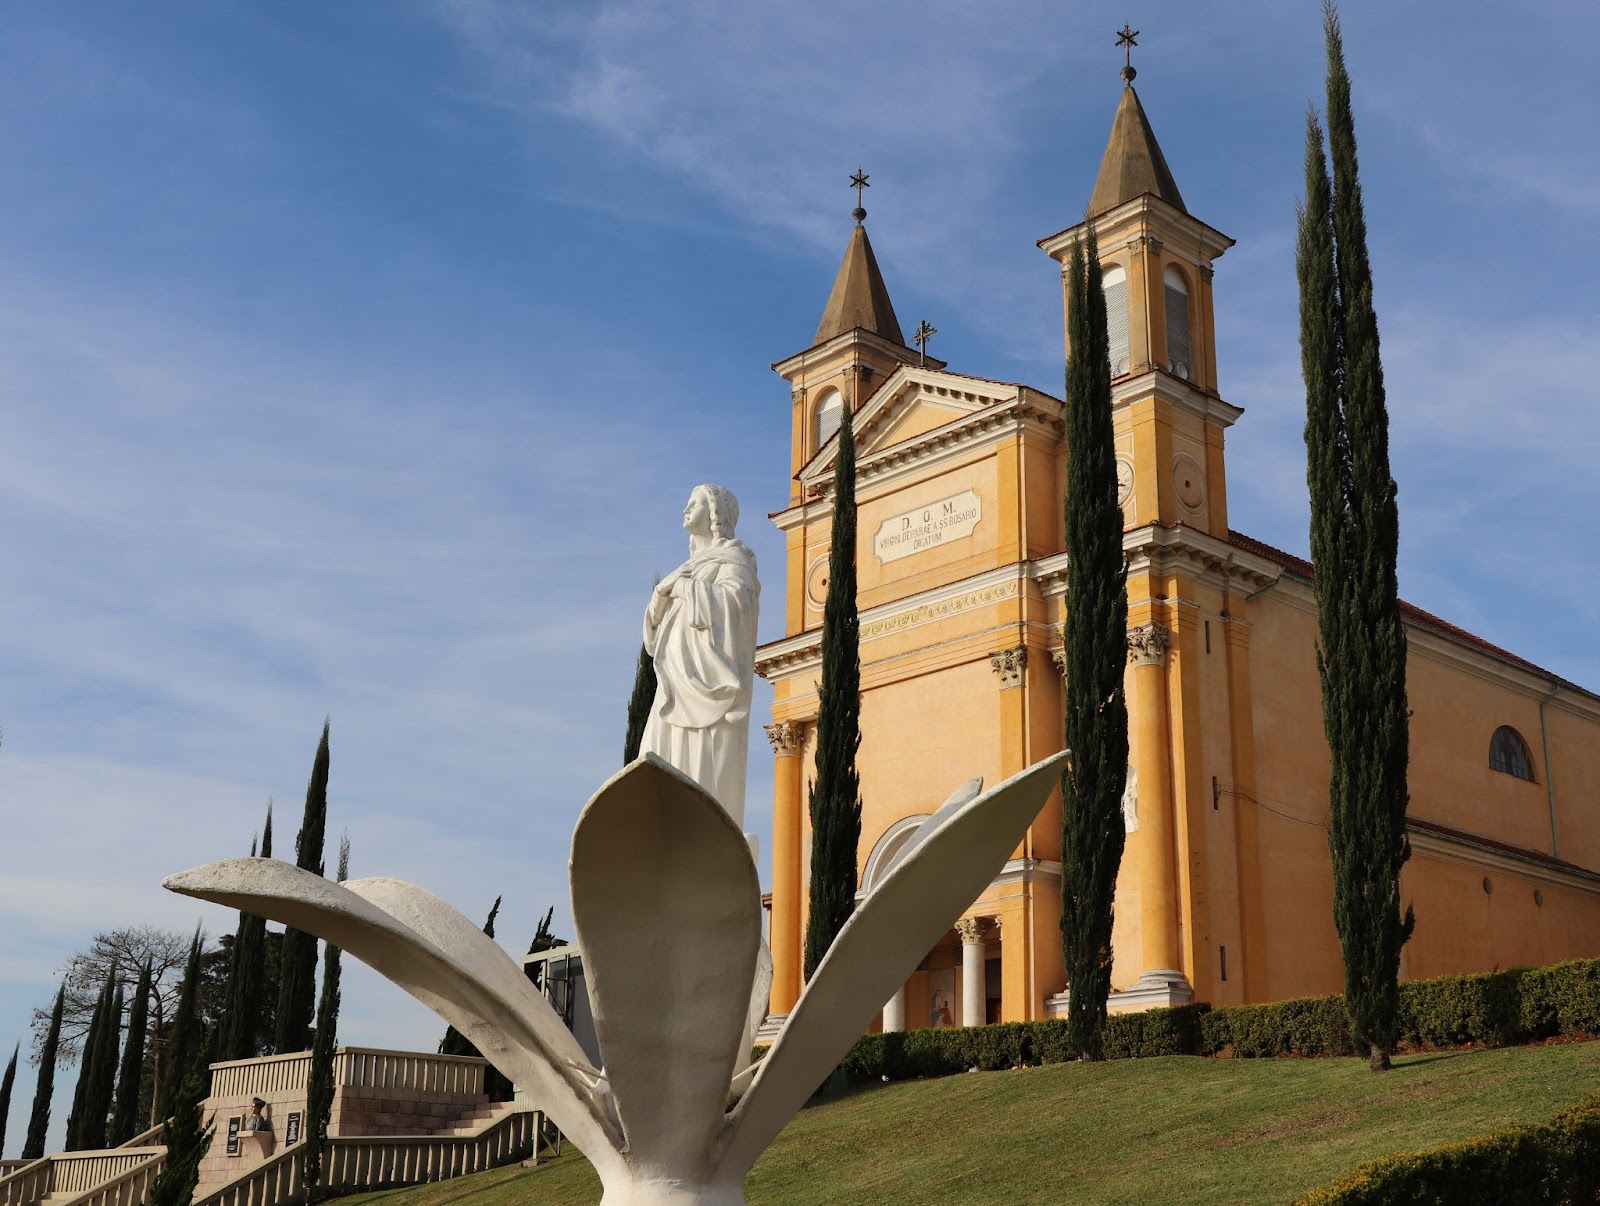 Igreja Matriz Nossa Senhora do Rosário ao lado direito da imagem, com estátua da santa à sua frente, e com foco na escultura de uma flor de lótus aberta.